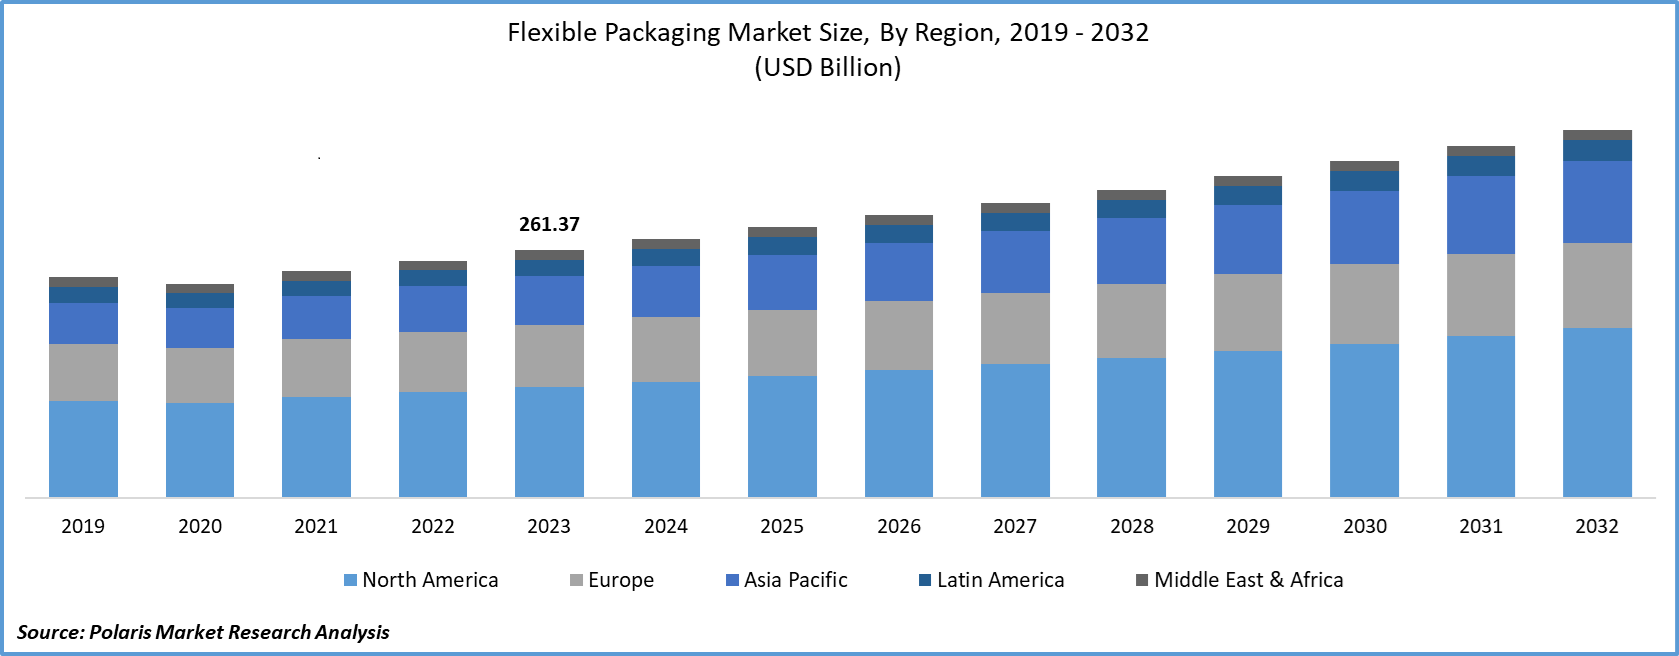 Flexible Packaging Market Size